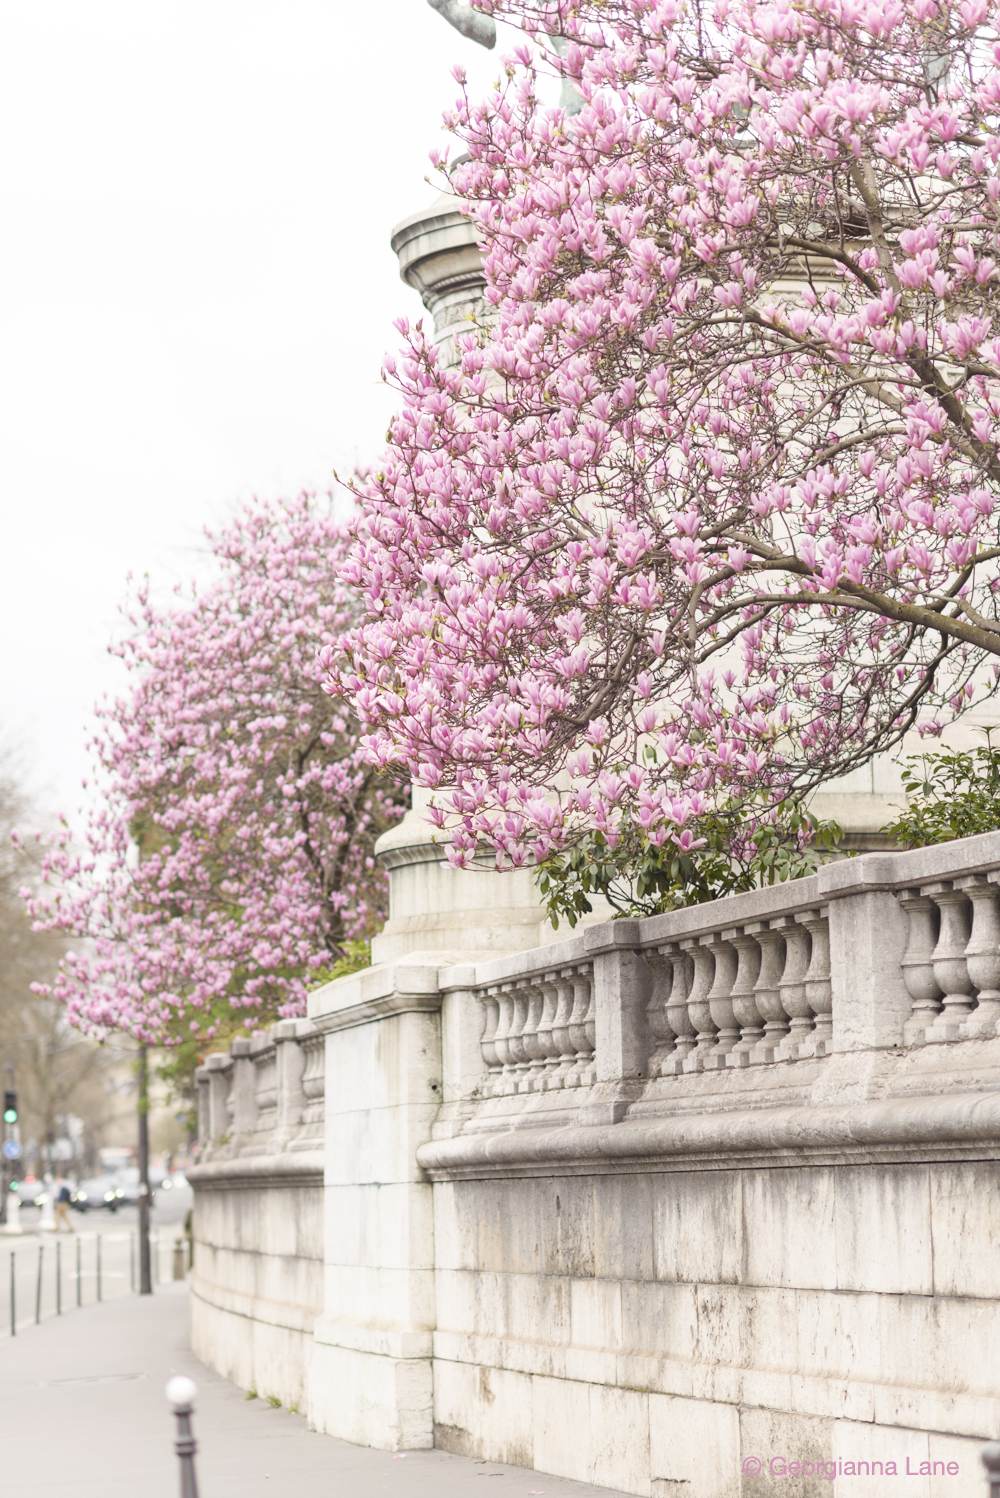 Magnolias in Paris by Georgianna Lane